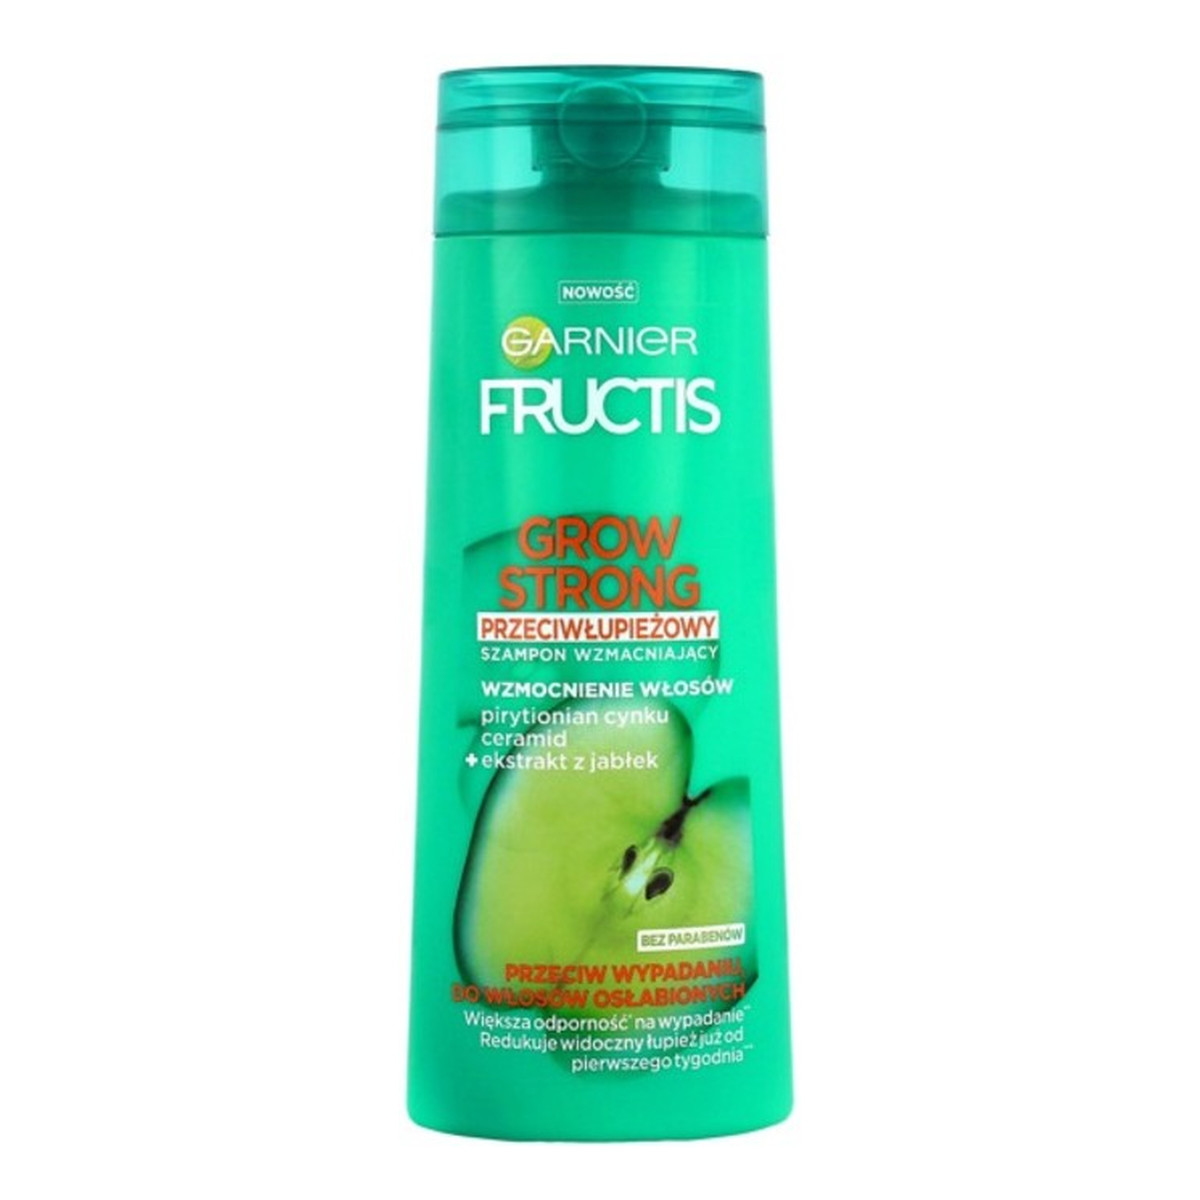 Garnier Fructis Grow Strong przeciwłupieżowy szampon do włosów przeciw wypadaniu 250ml